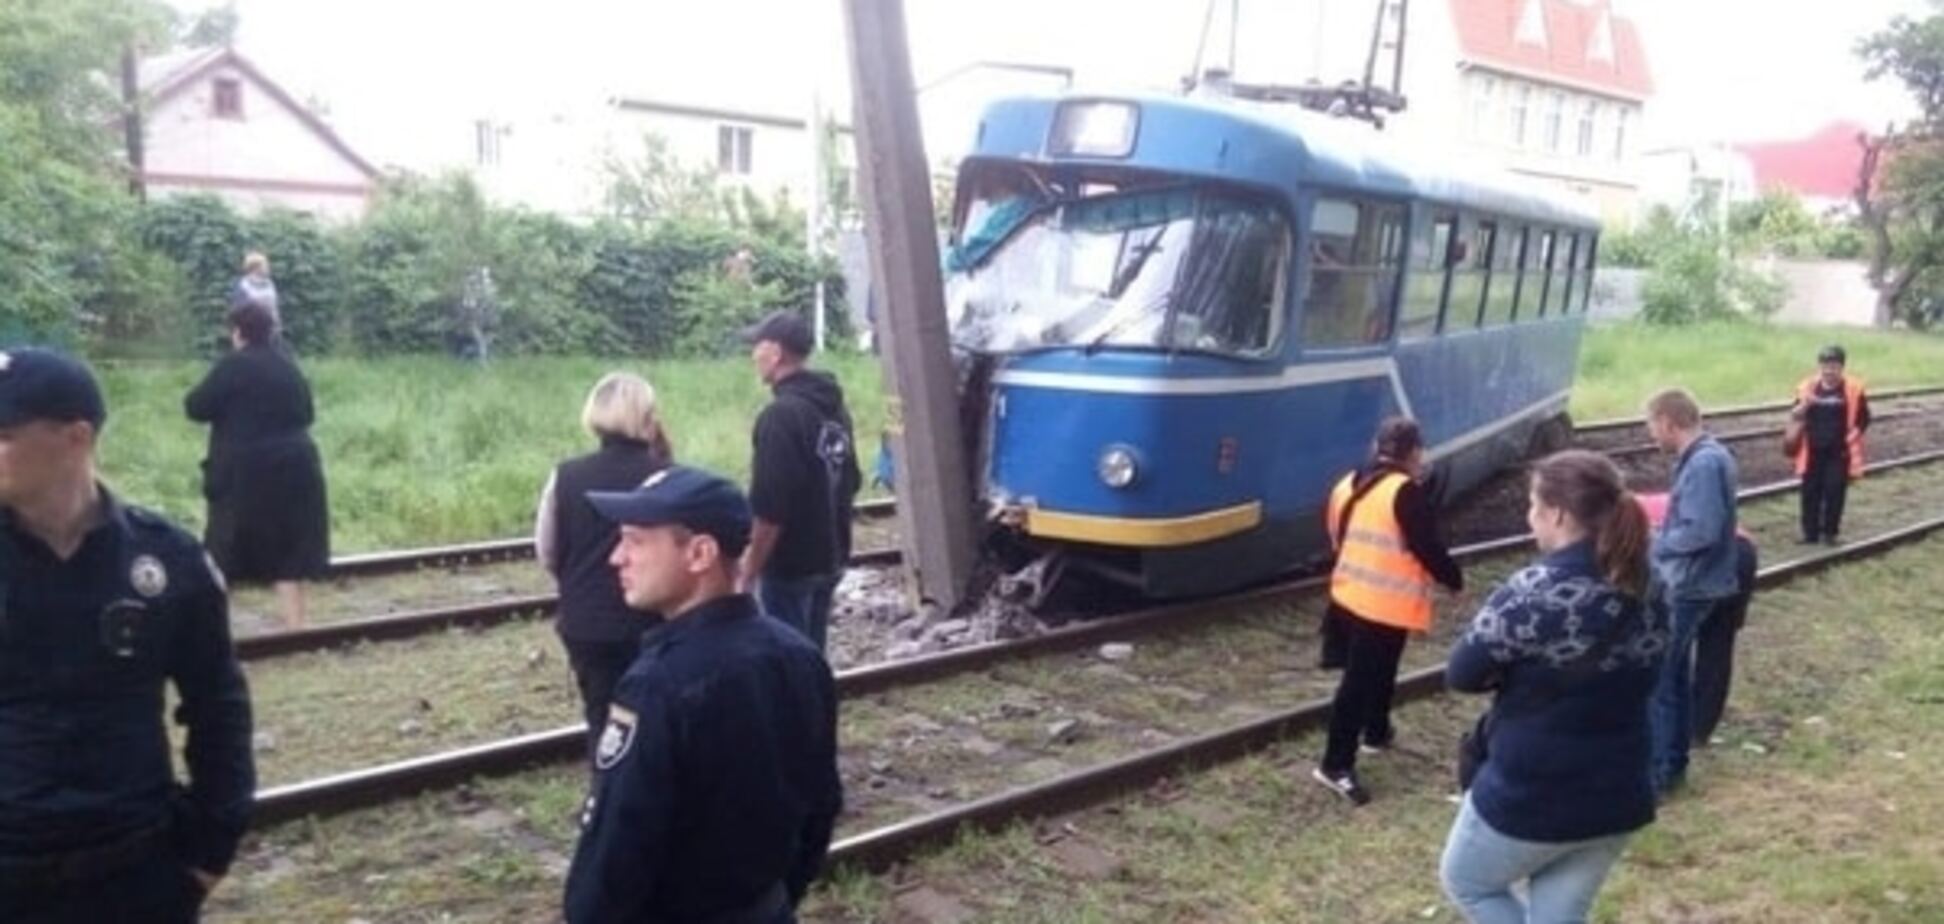 В Одессе трамвай сошел с рельсов и врезался в столб